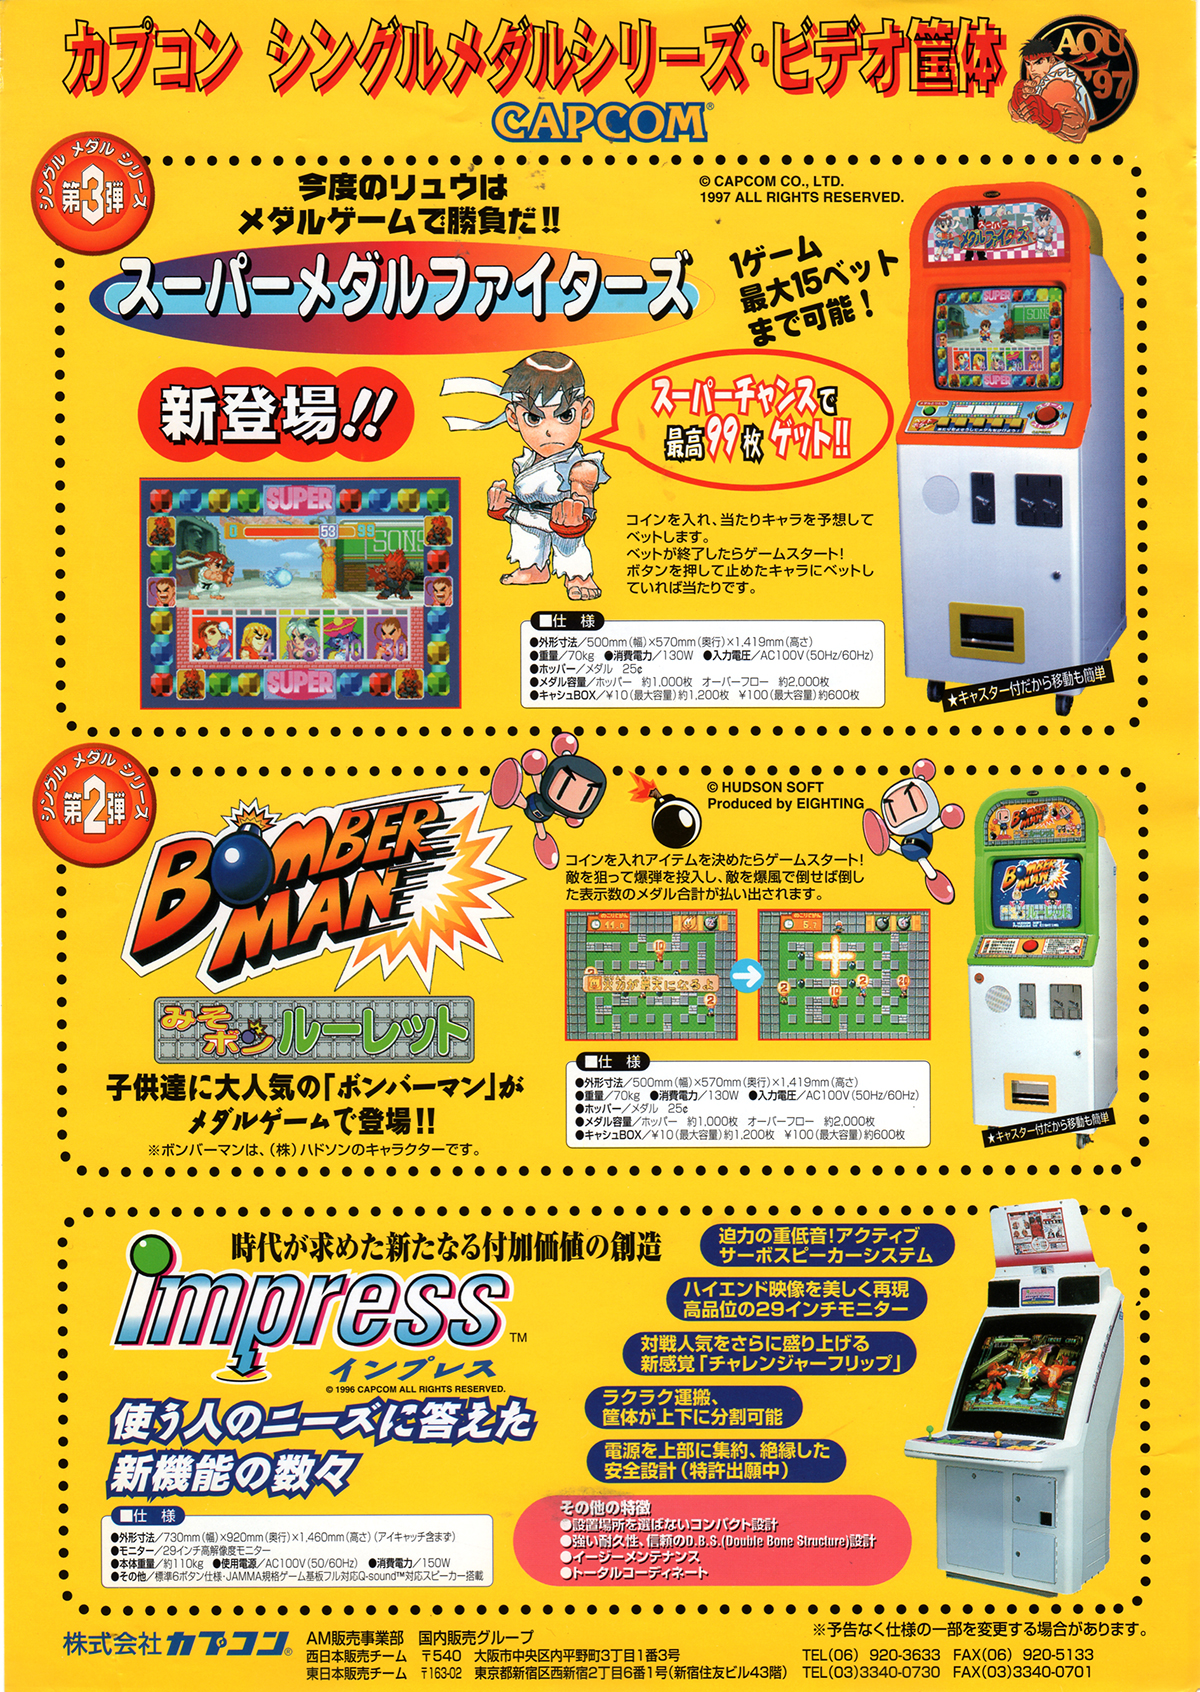 カプコン シングルメダルシリーズ チラシ Capcom Single Medal Series Flyer